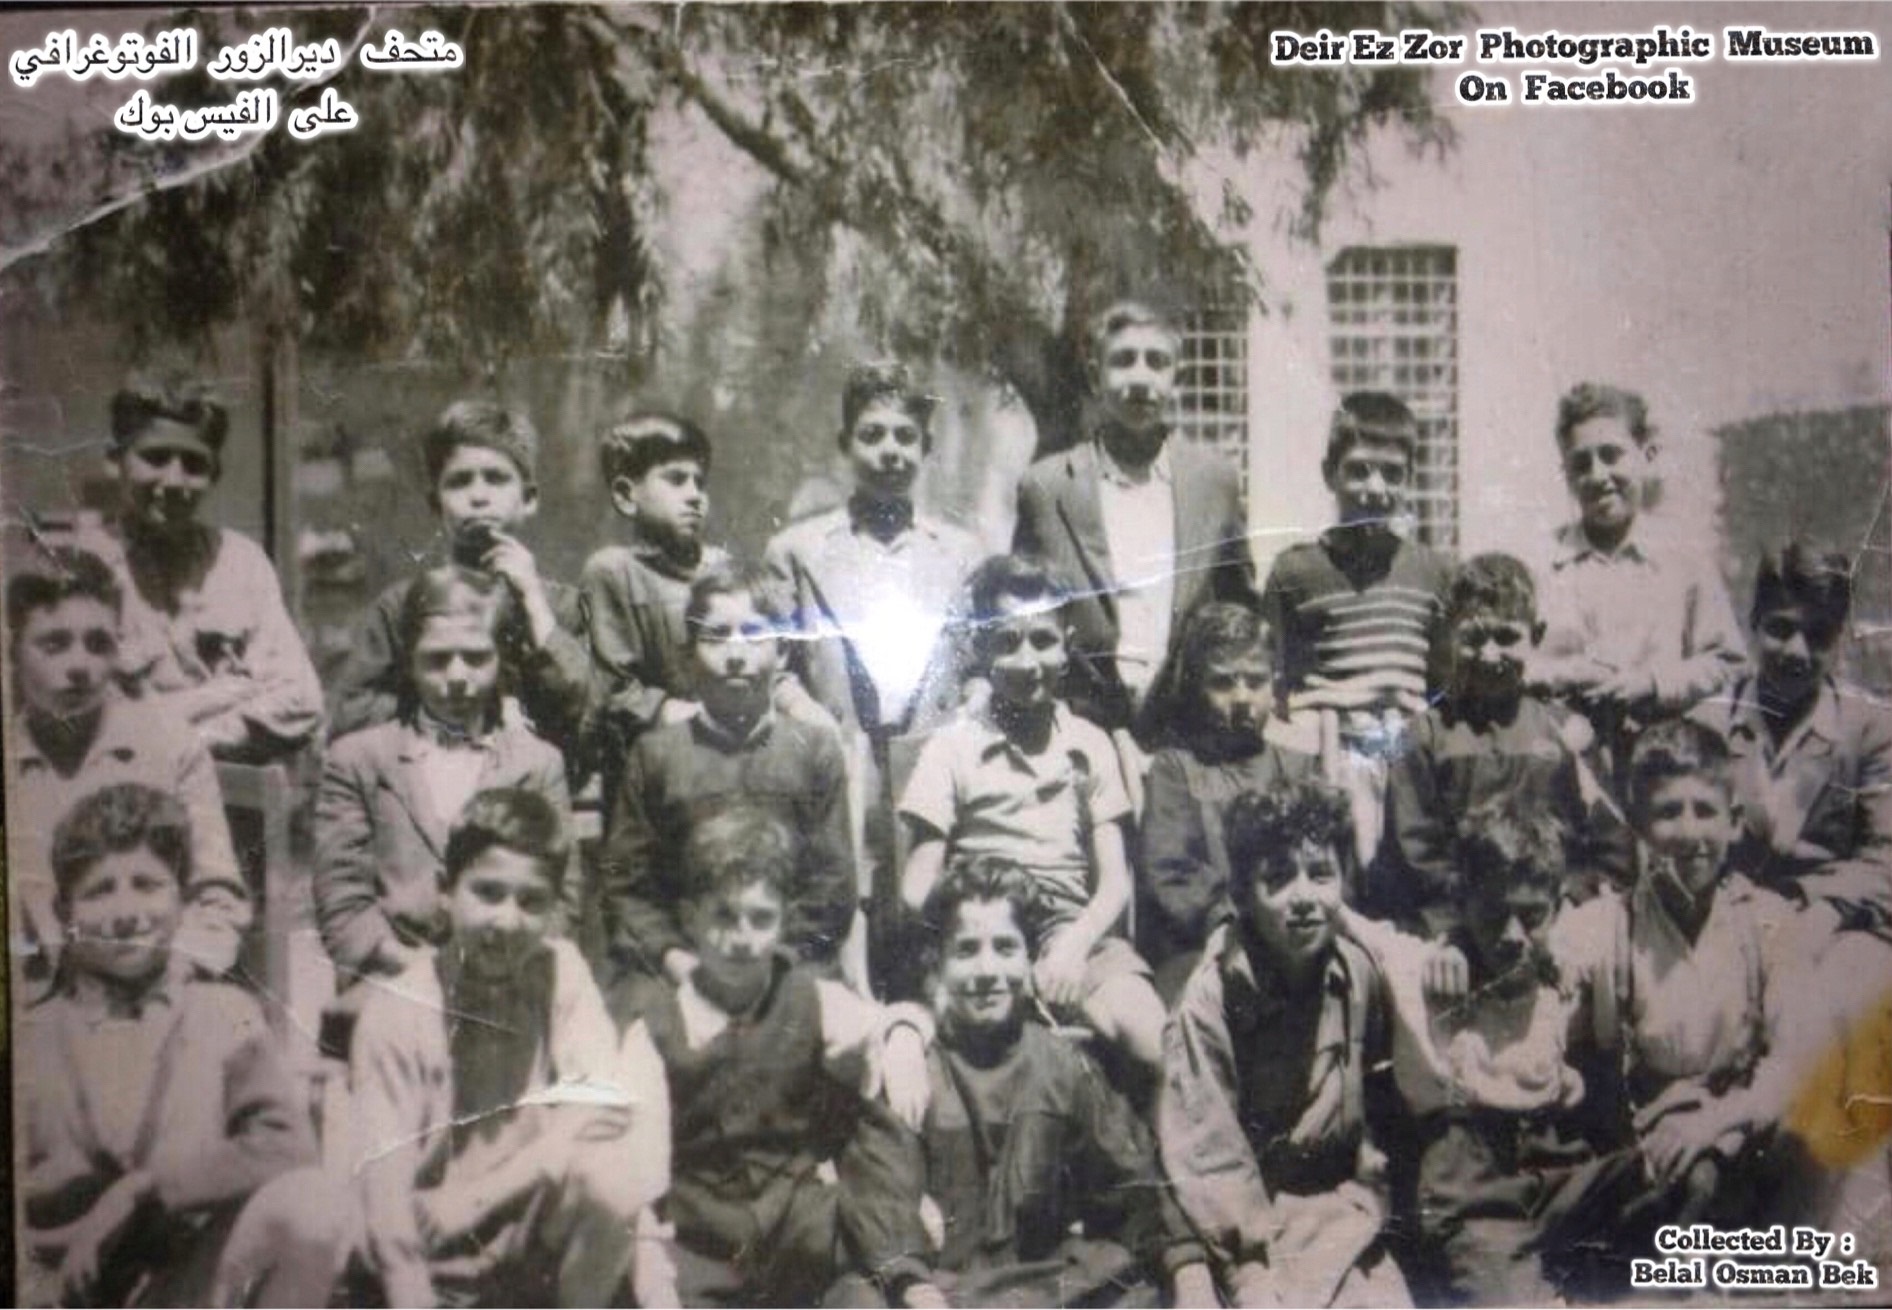 التاريخ السوري المعاصر - طلاب الصف الخامس في مدرسة إبراهيم هنانو - دير الزور في خمسينيات القرن العشرين